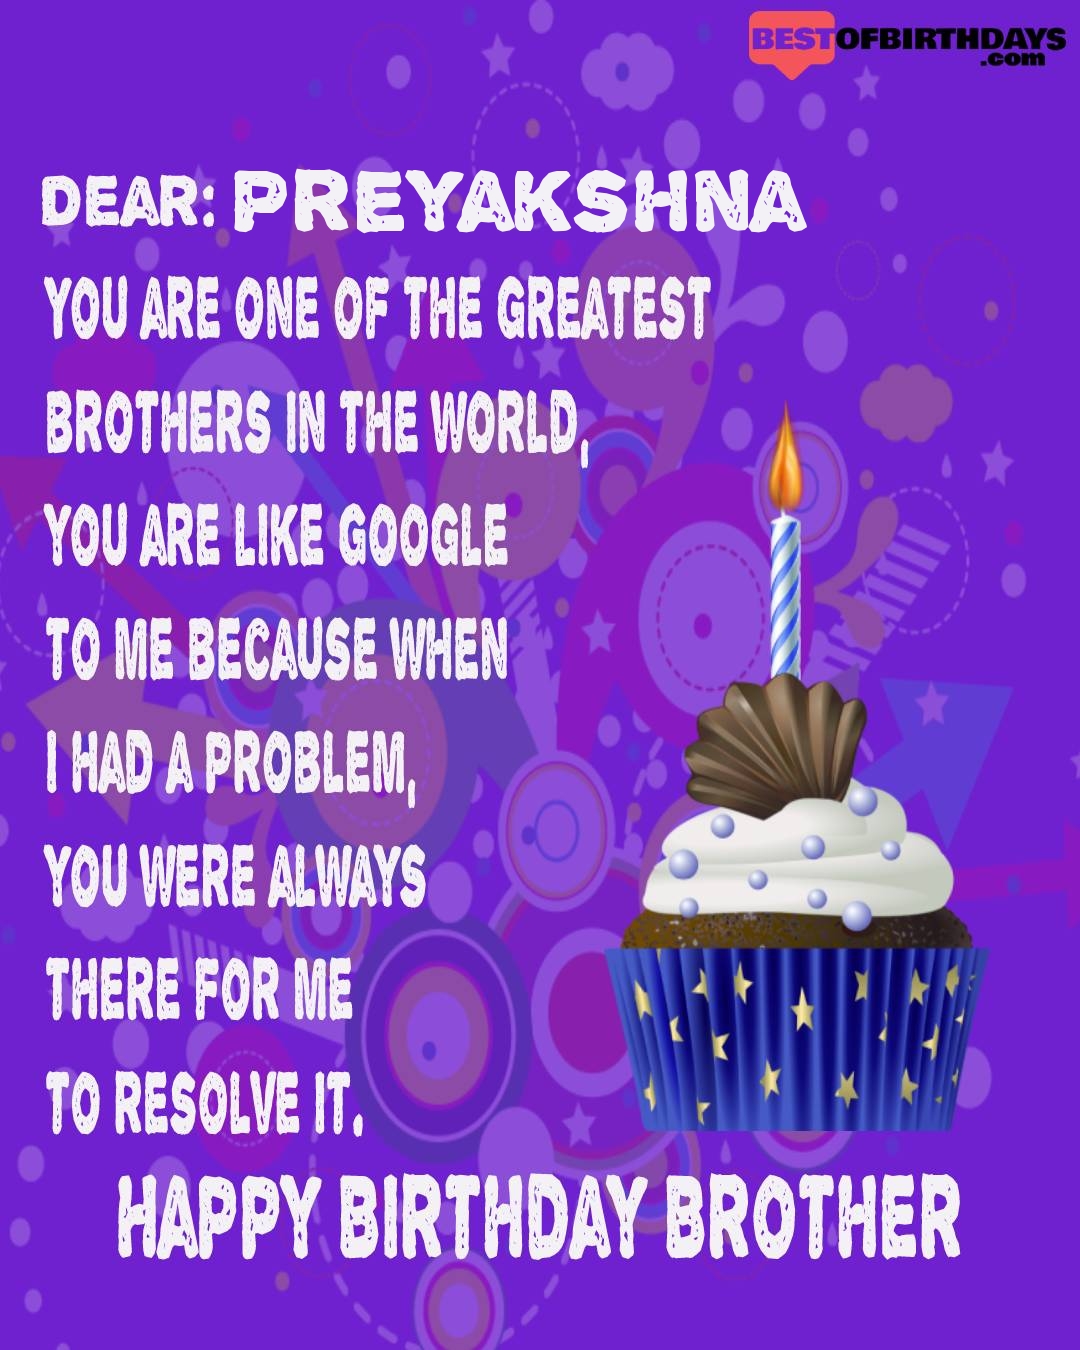 Happy birthday preyakshna bhai brother bro